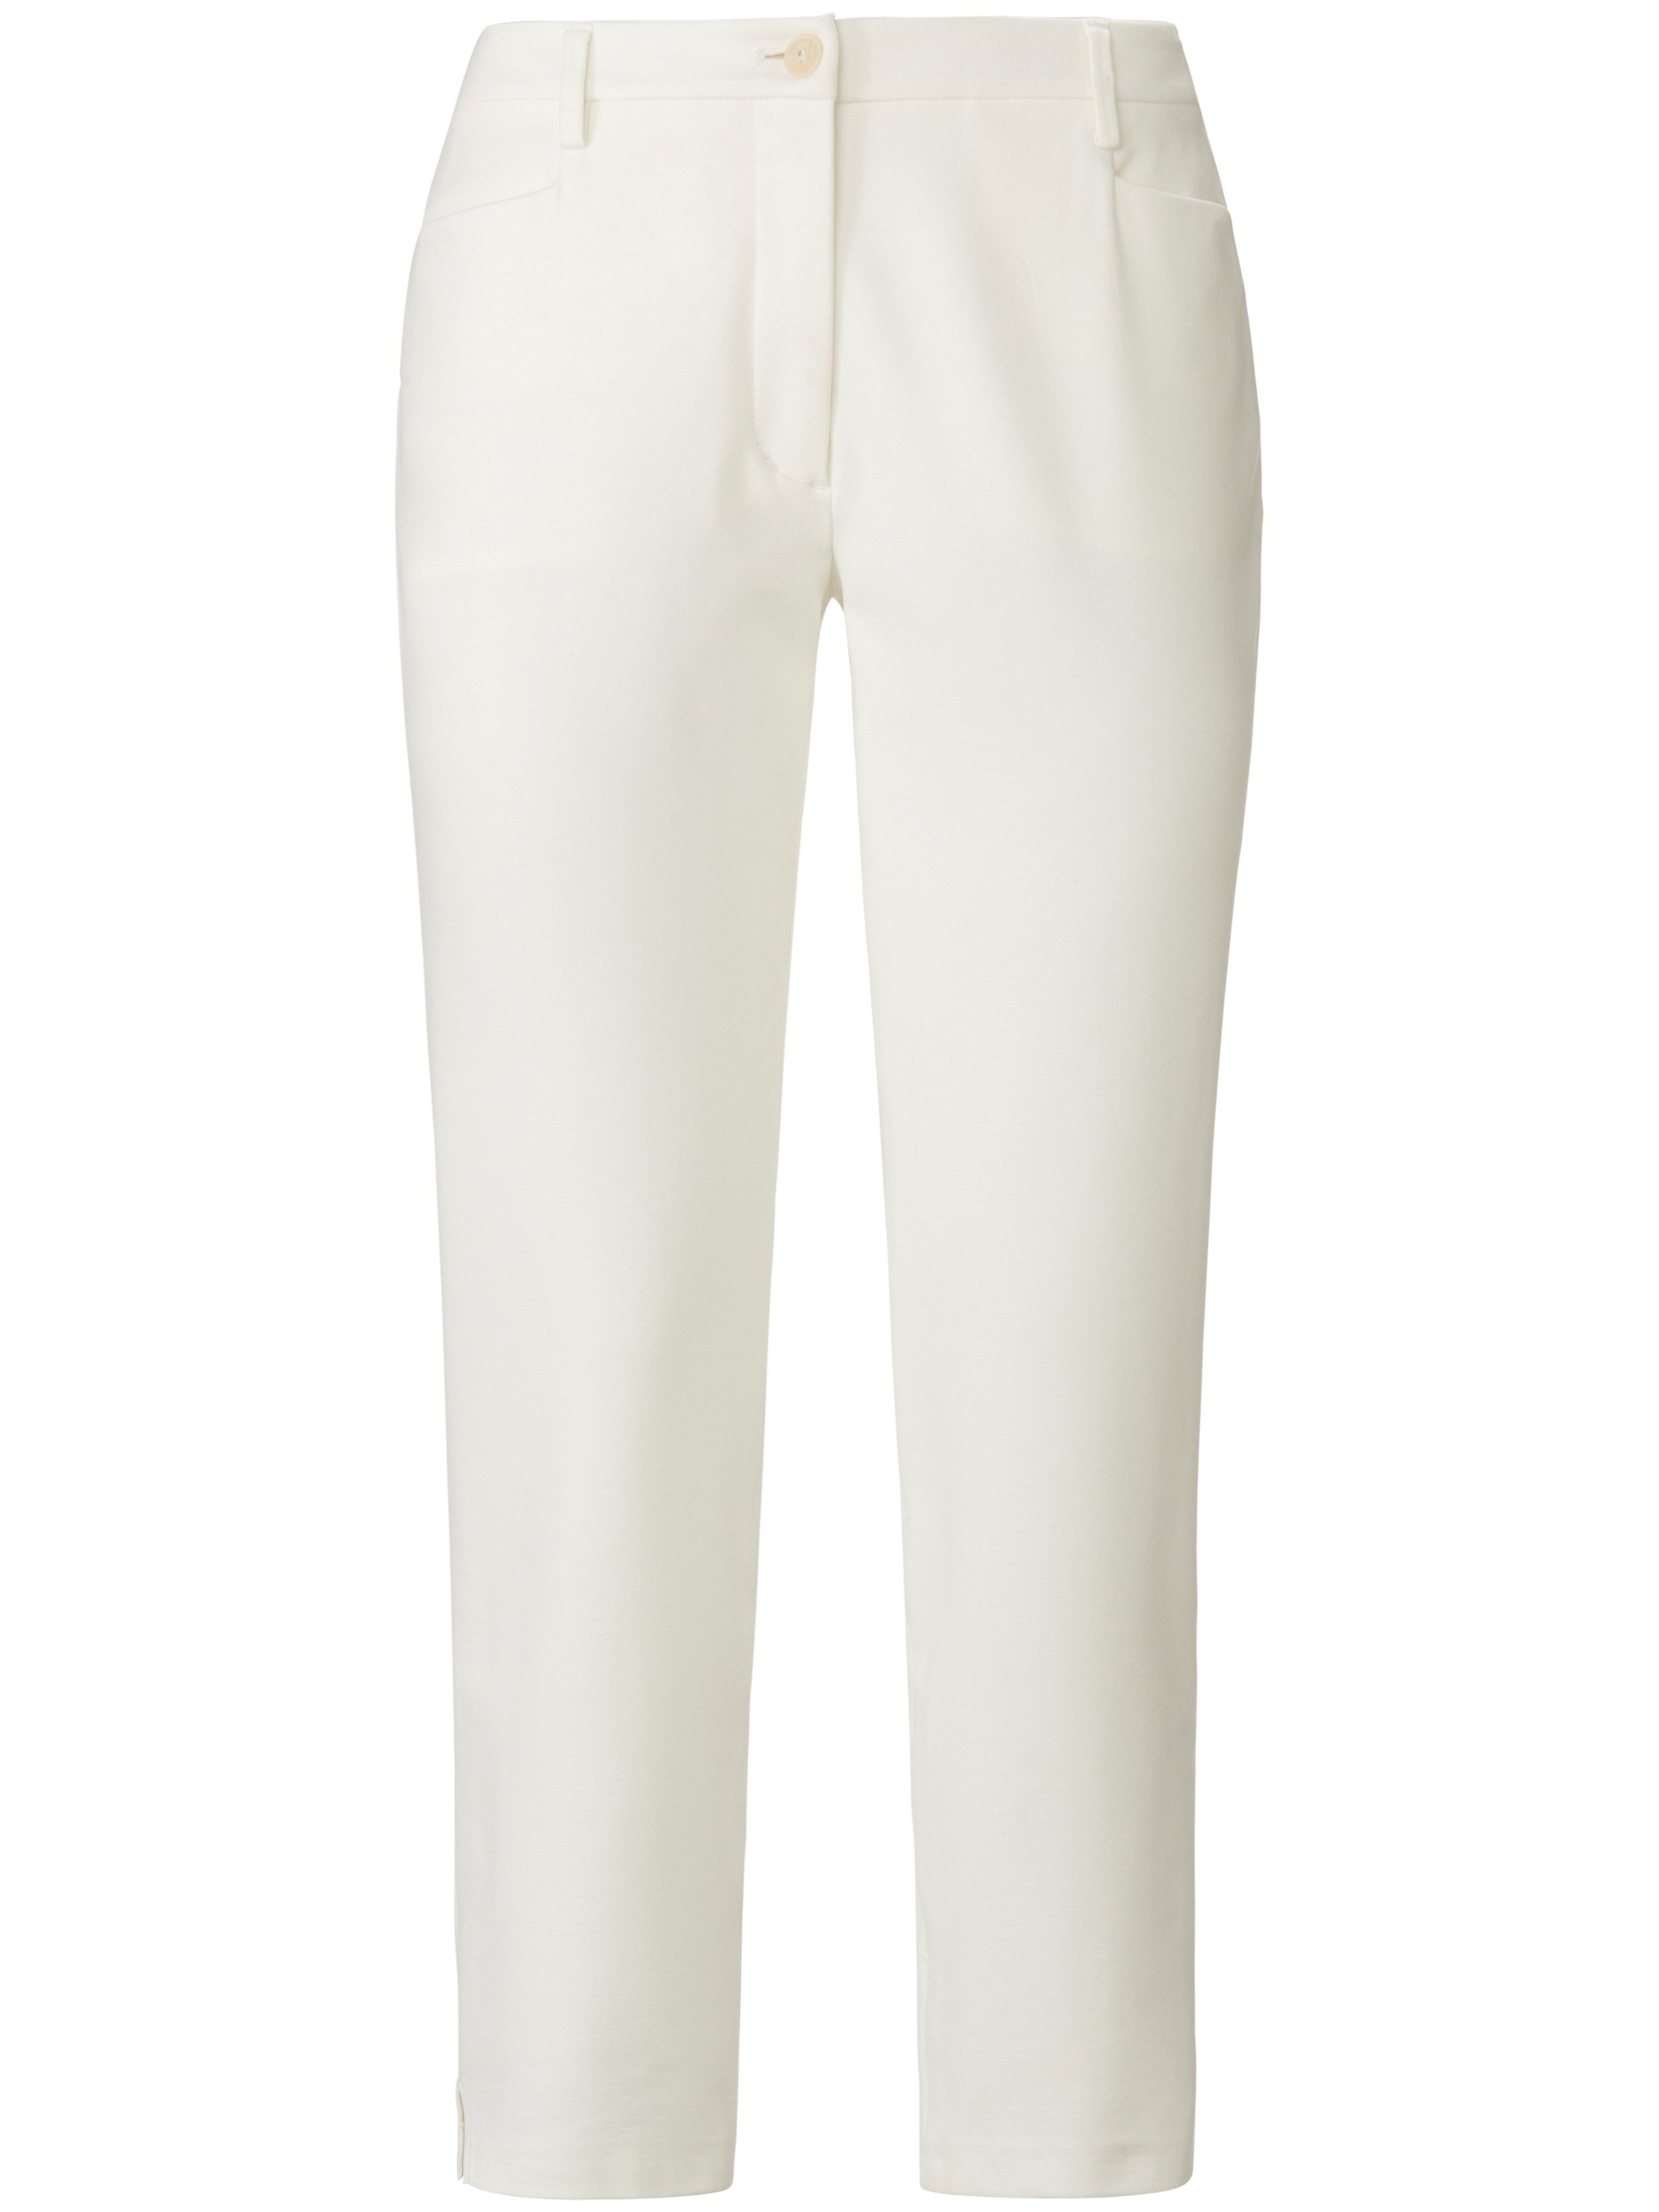 Le pantalon jersey longueur chevilles  tRUE STANDARD blanc taille 50